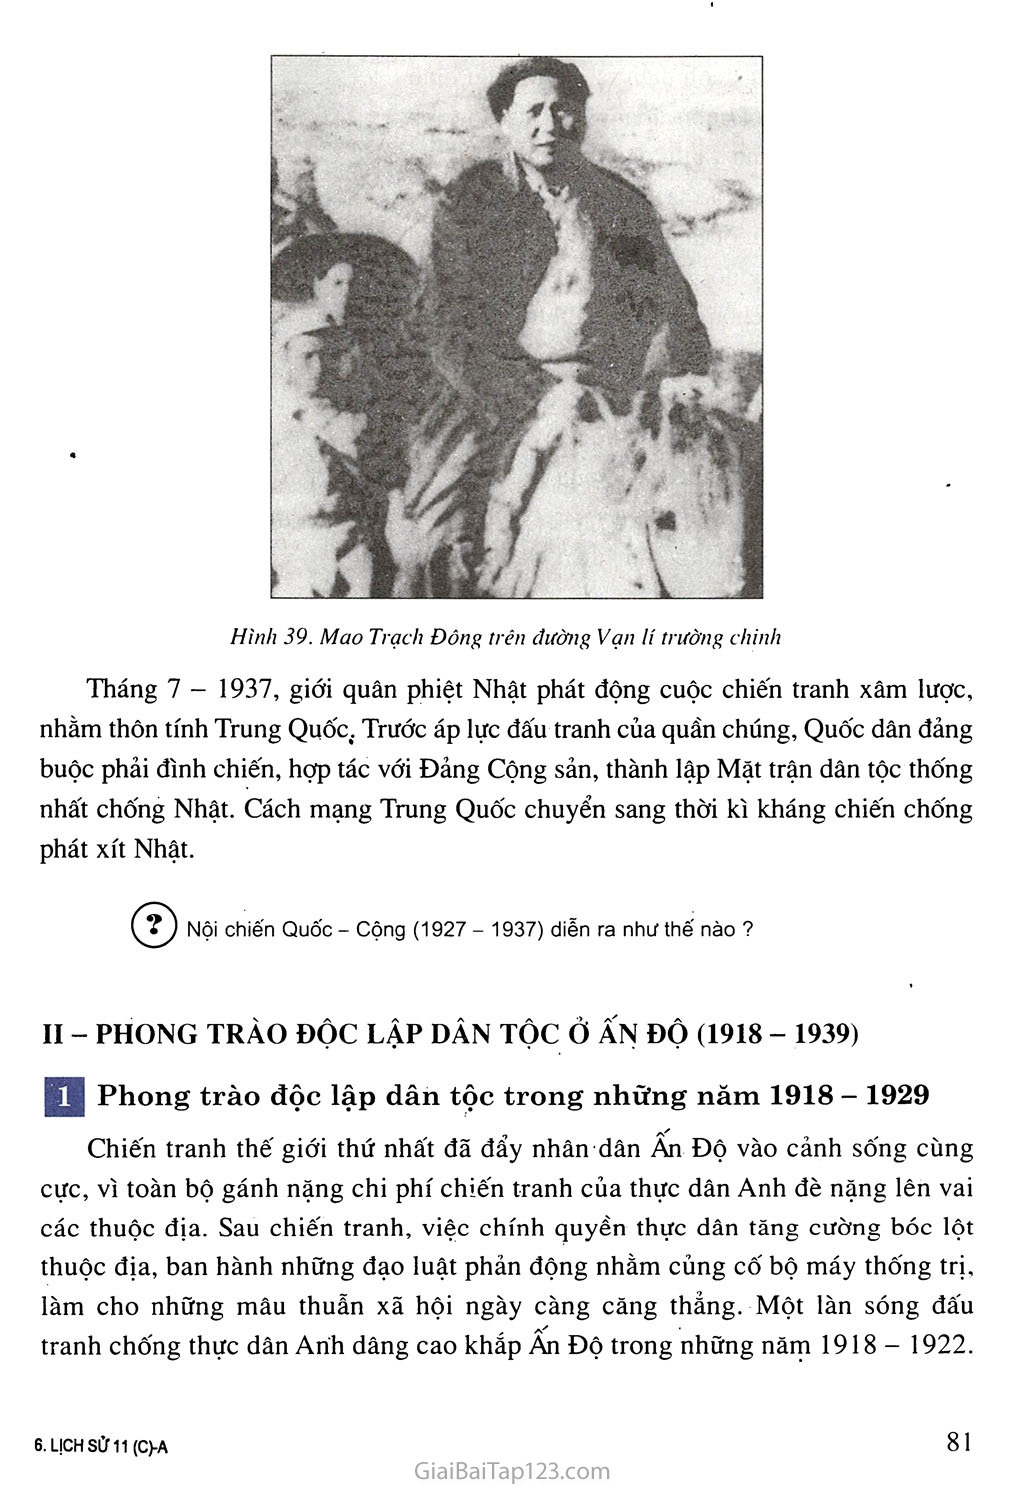 Bài 15. Phong trào cách mạng ở Trung Quốc và Ấn Độ (1918 - 1939) trang 3